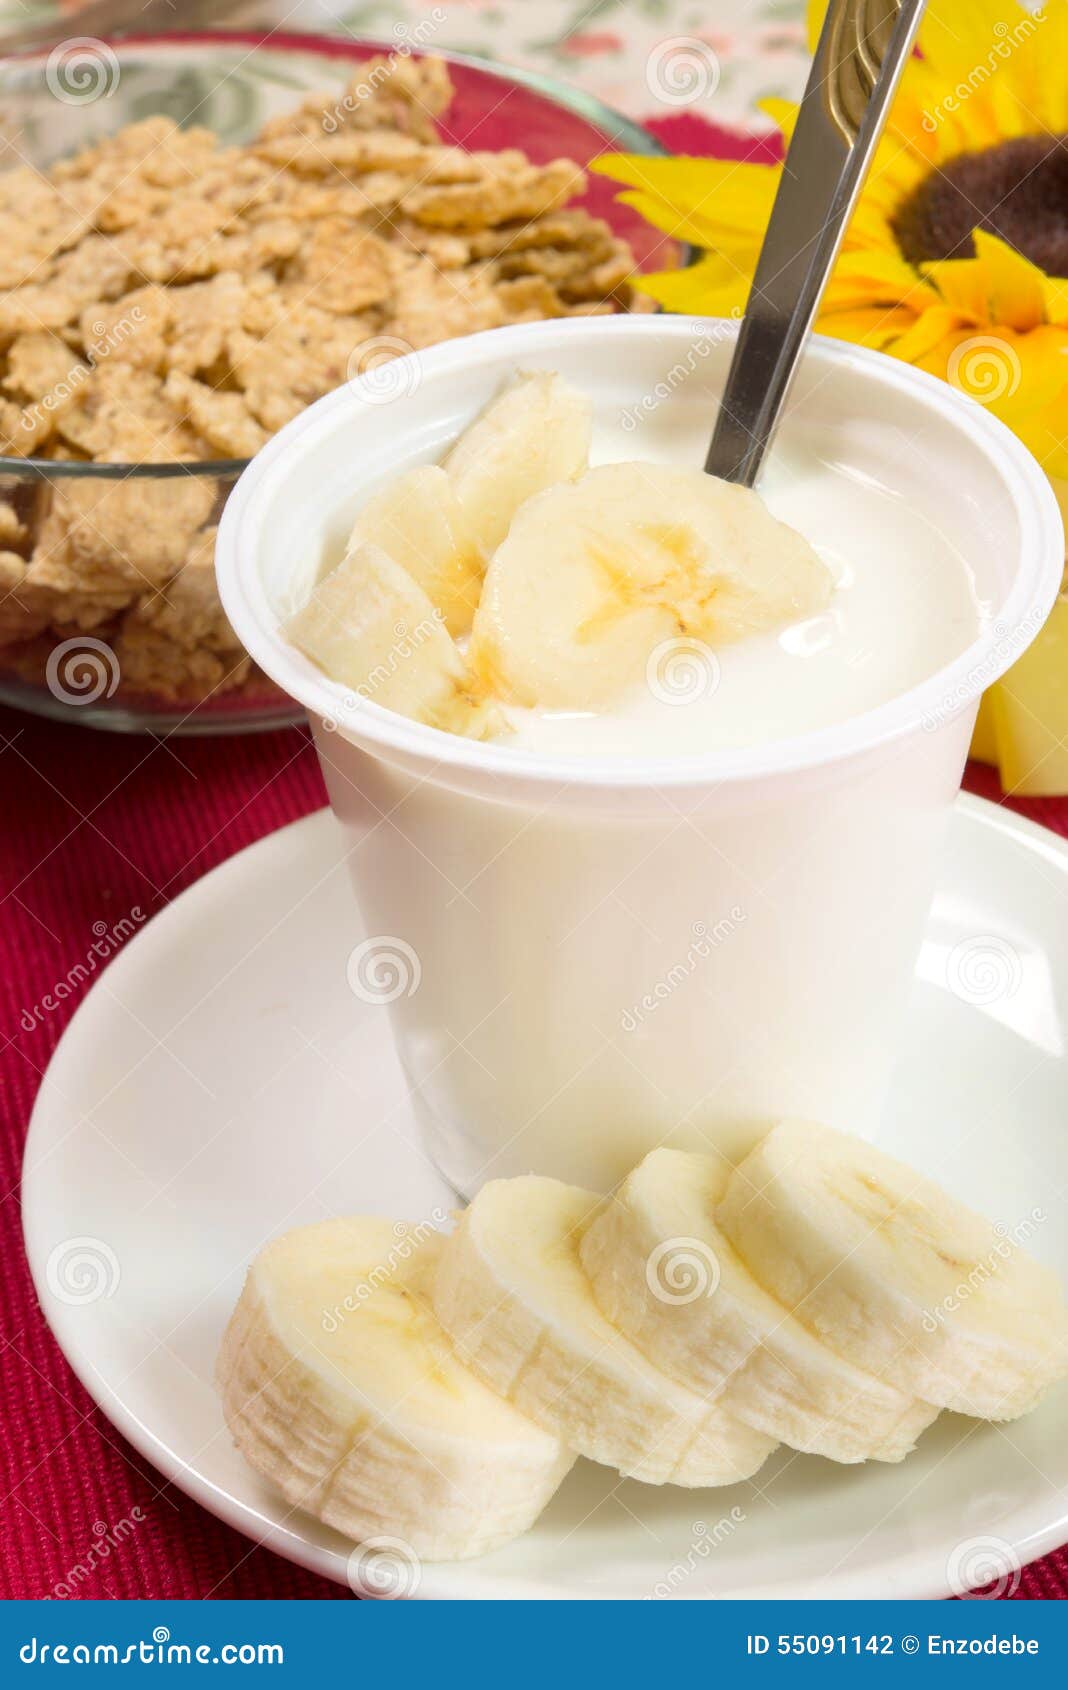 香蕉酸奶怎么做_香蕉酸奶的做法_豆果美食